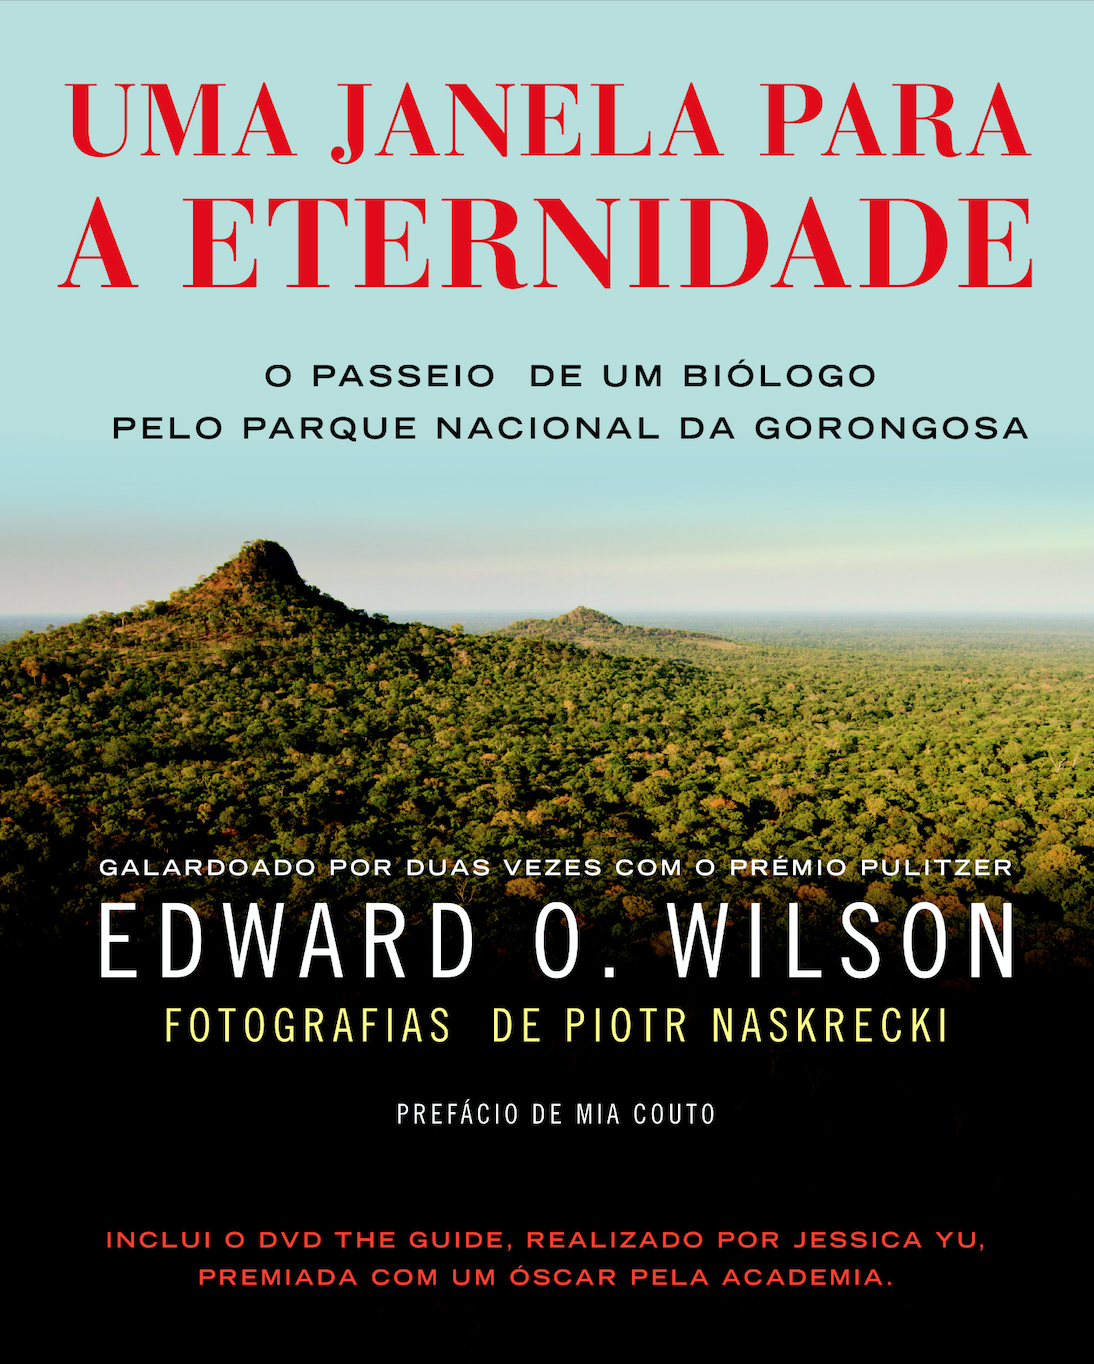 Livro the future of life de professor edward o. wilson (inglês)